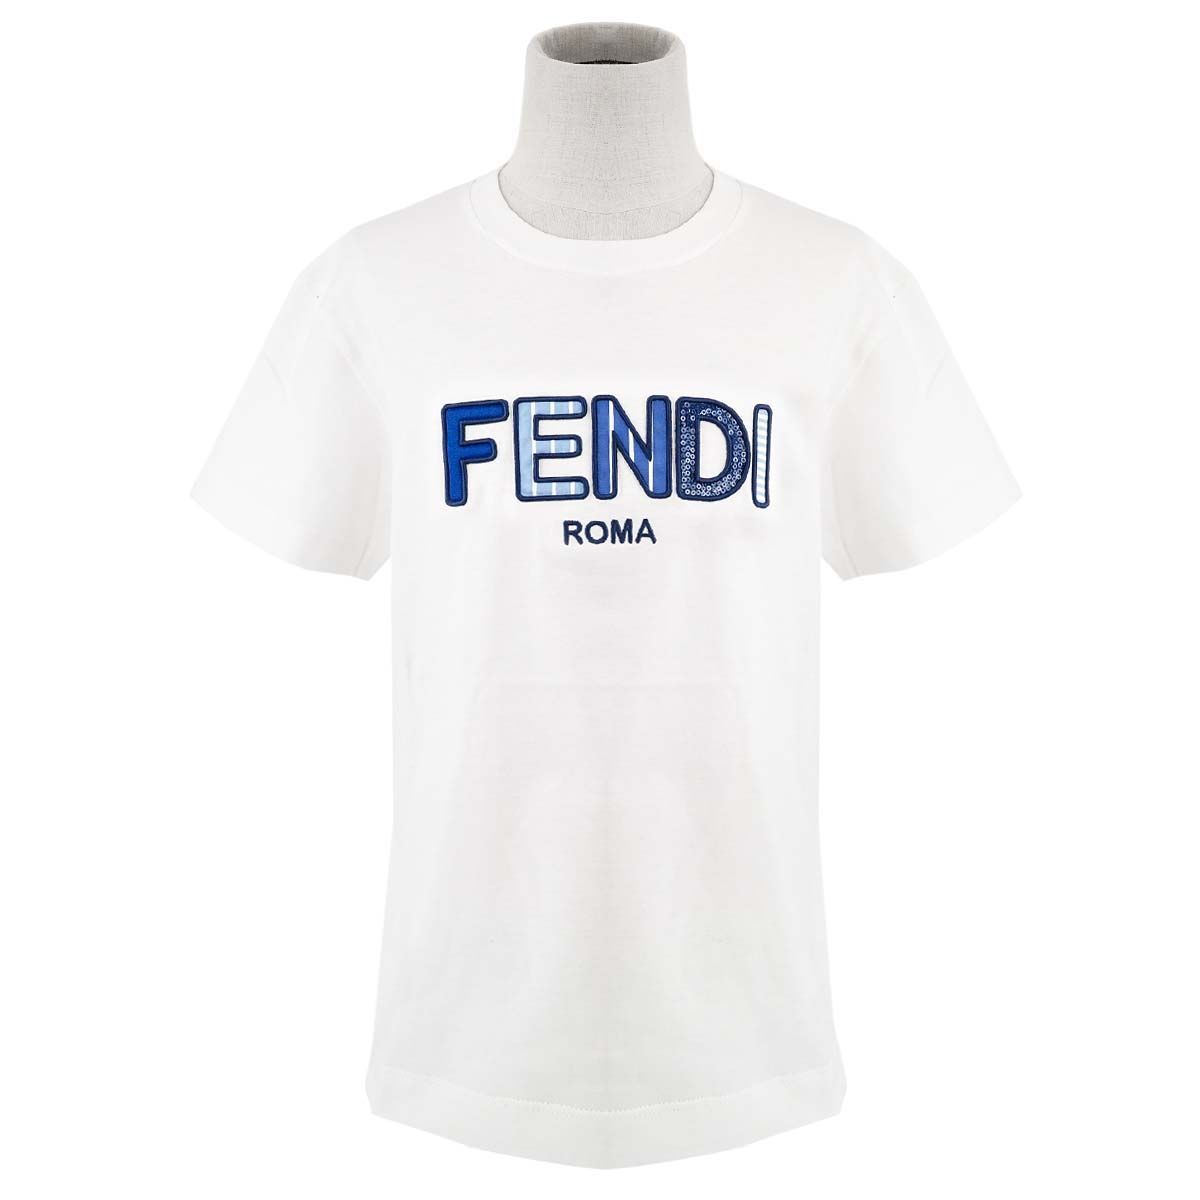 FENDI フェンディ kids Tシャツ 8year-